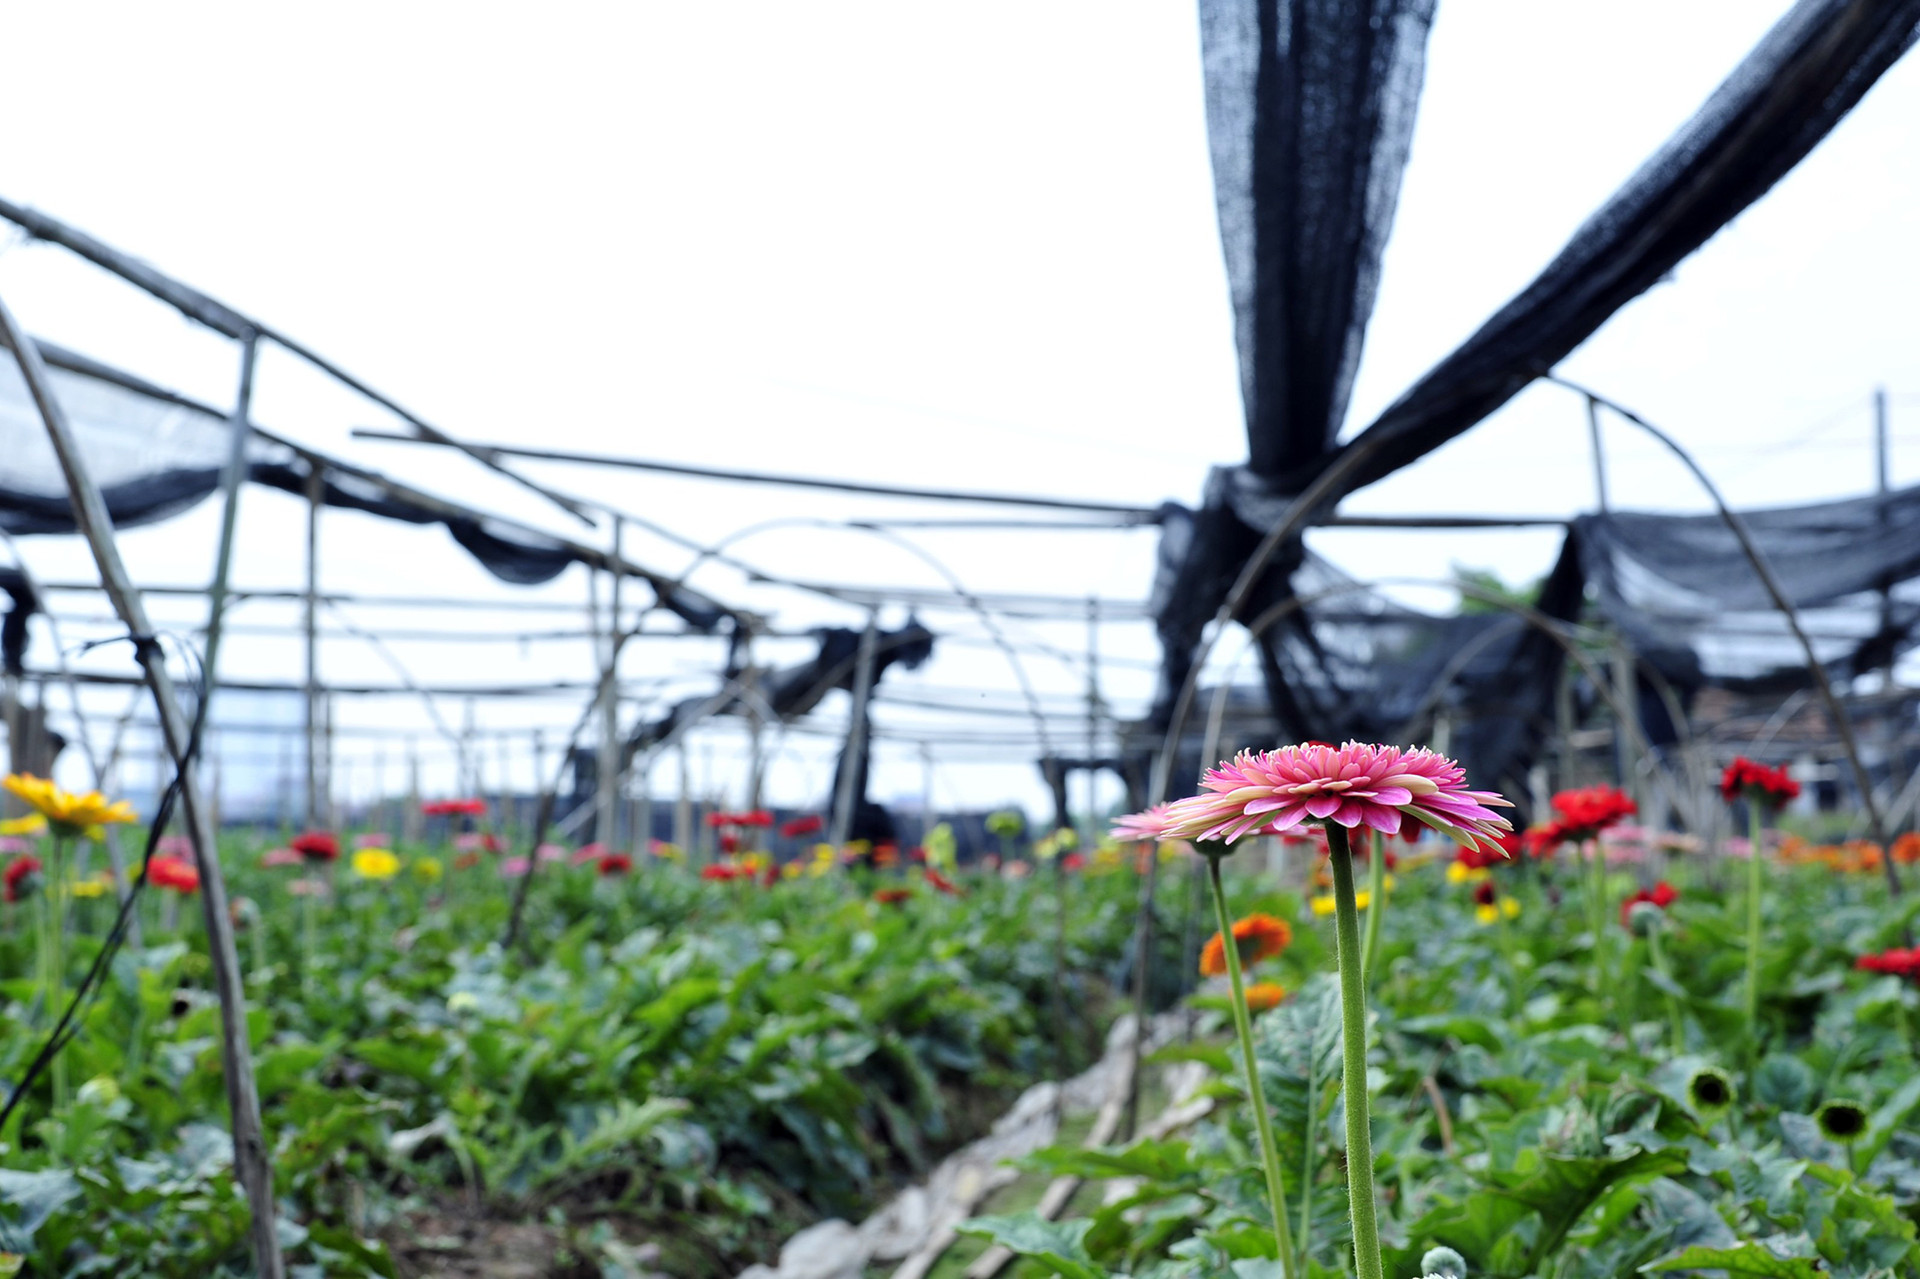 Hoa nở “lệch múi giờ”, nông dân Hà Nội thu hoạch sớm để bảo quản lạnh, chờ phục vụ người chơi đúng dịp Tết - Ảnh 12.